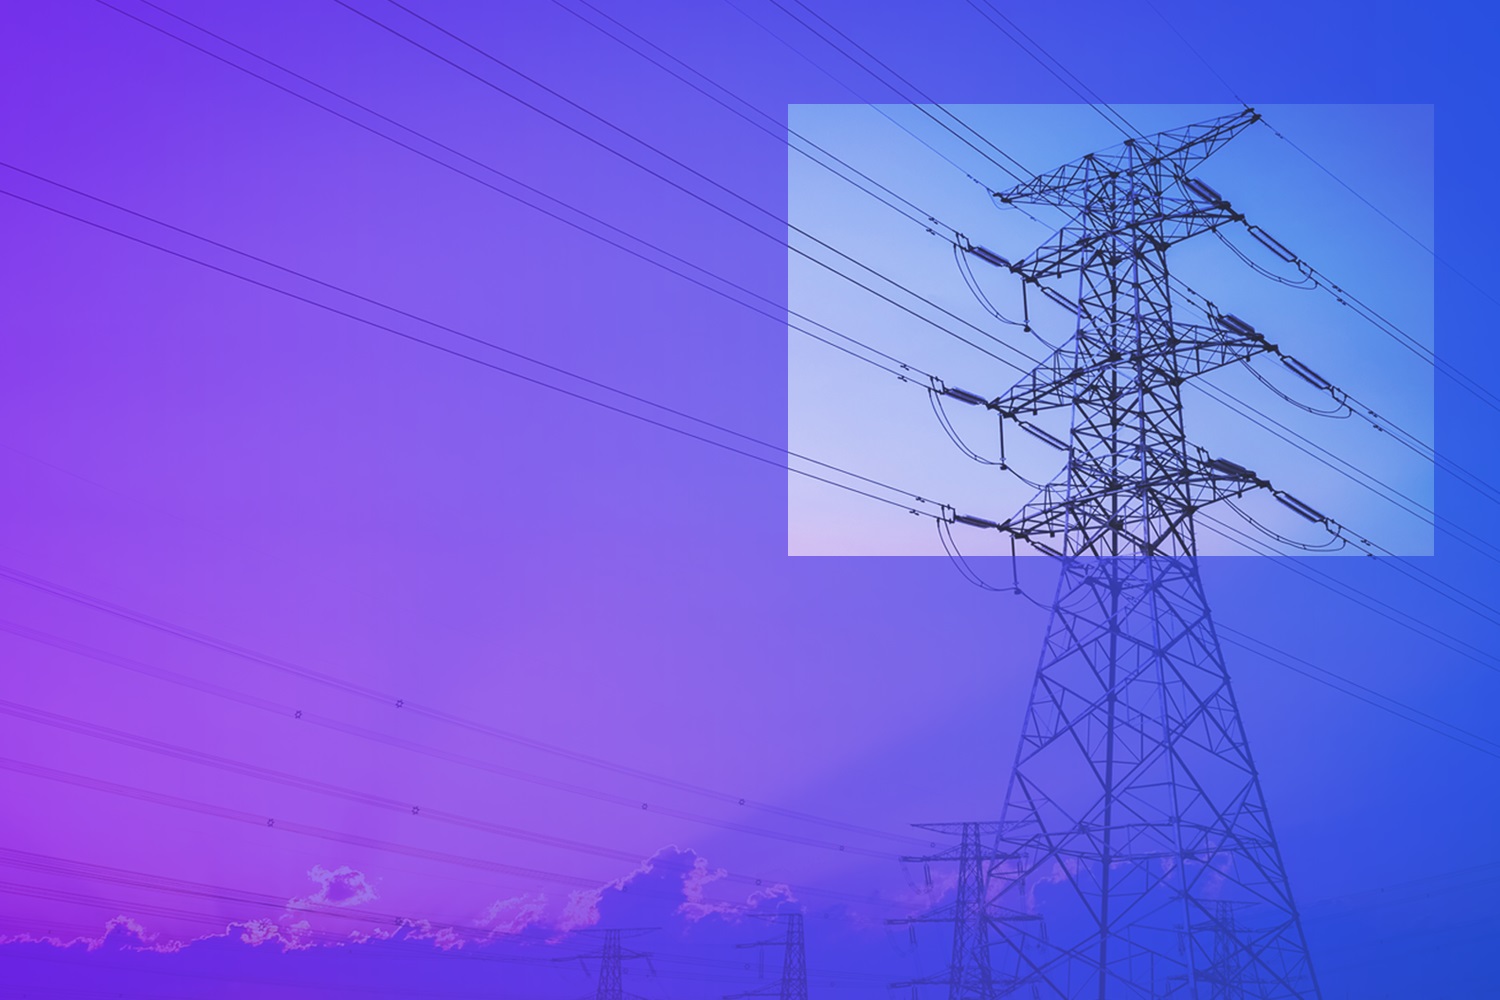 Báo cáo ngành điện & tiện ích công cộng Châu Âu Q4 2021 - KPMG Global: Đọc báo cáo ngành điện và tiện ích công cộng của Châu Âu trong quý 4 năm 2021 và bạn sẽ có được những thông tin cập nhật và đầy đủ nhất về ngành điện hiện nay. Đi kèm với đó là các lời khuyên hữu ích từ KPMG Global.